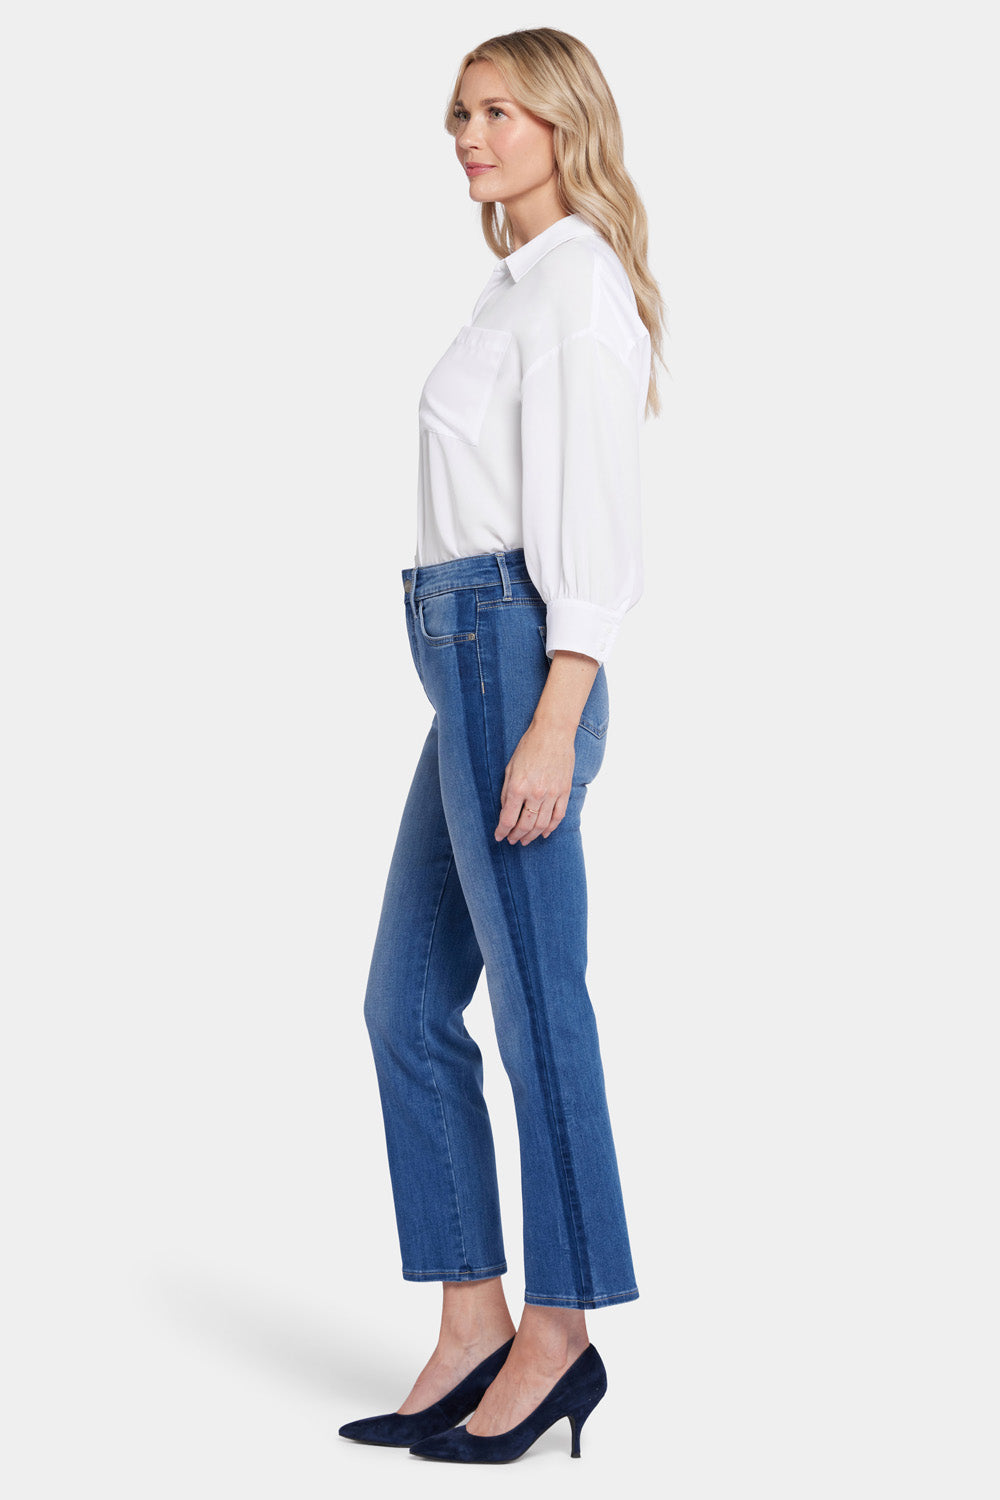 Alina Skinny Ankle Jeans In BlueLast™ Denim - Dark Rinse Blue | NYDJ